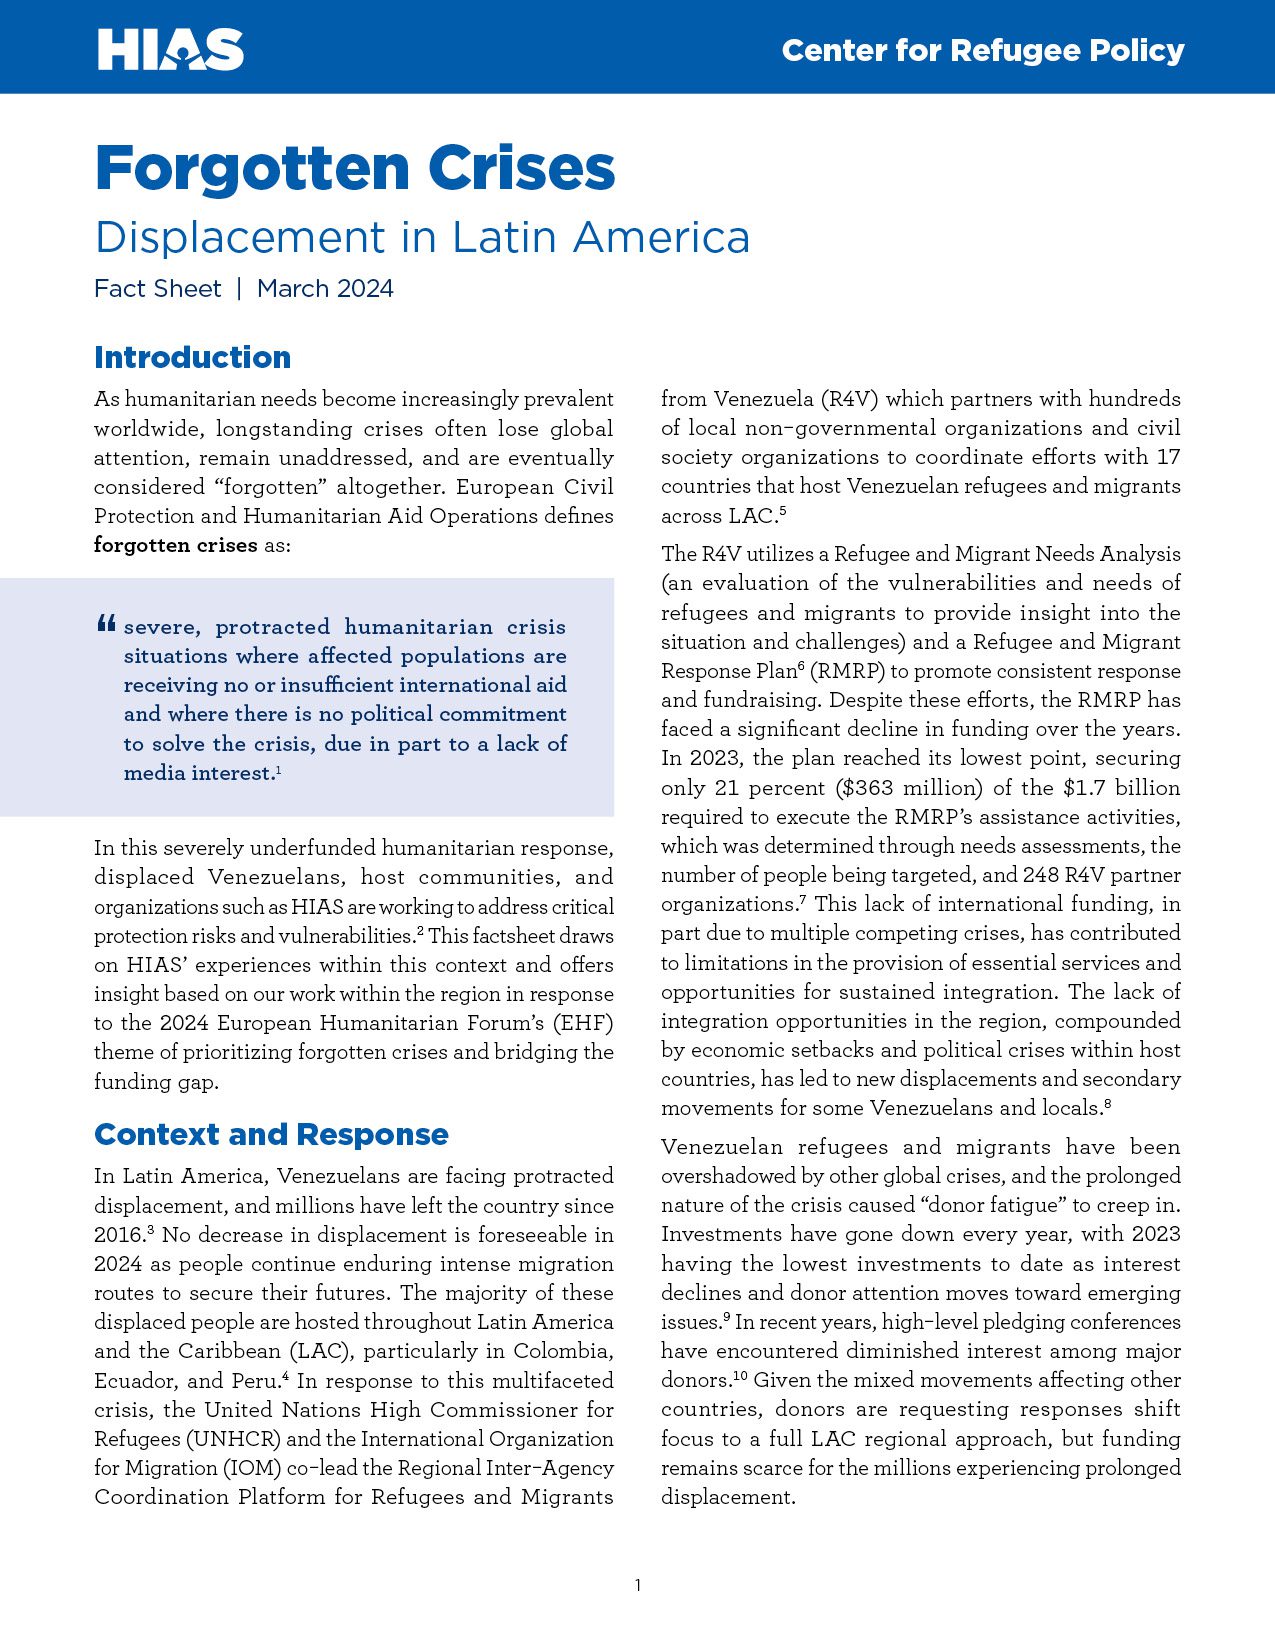 Forgotten Crises: Displacement in Latin America